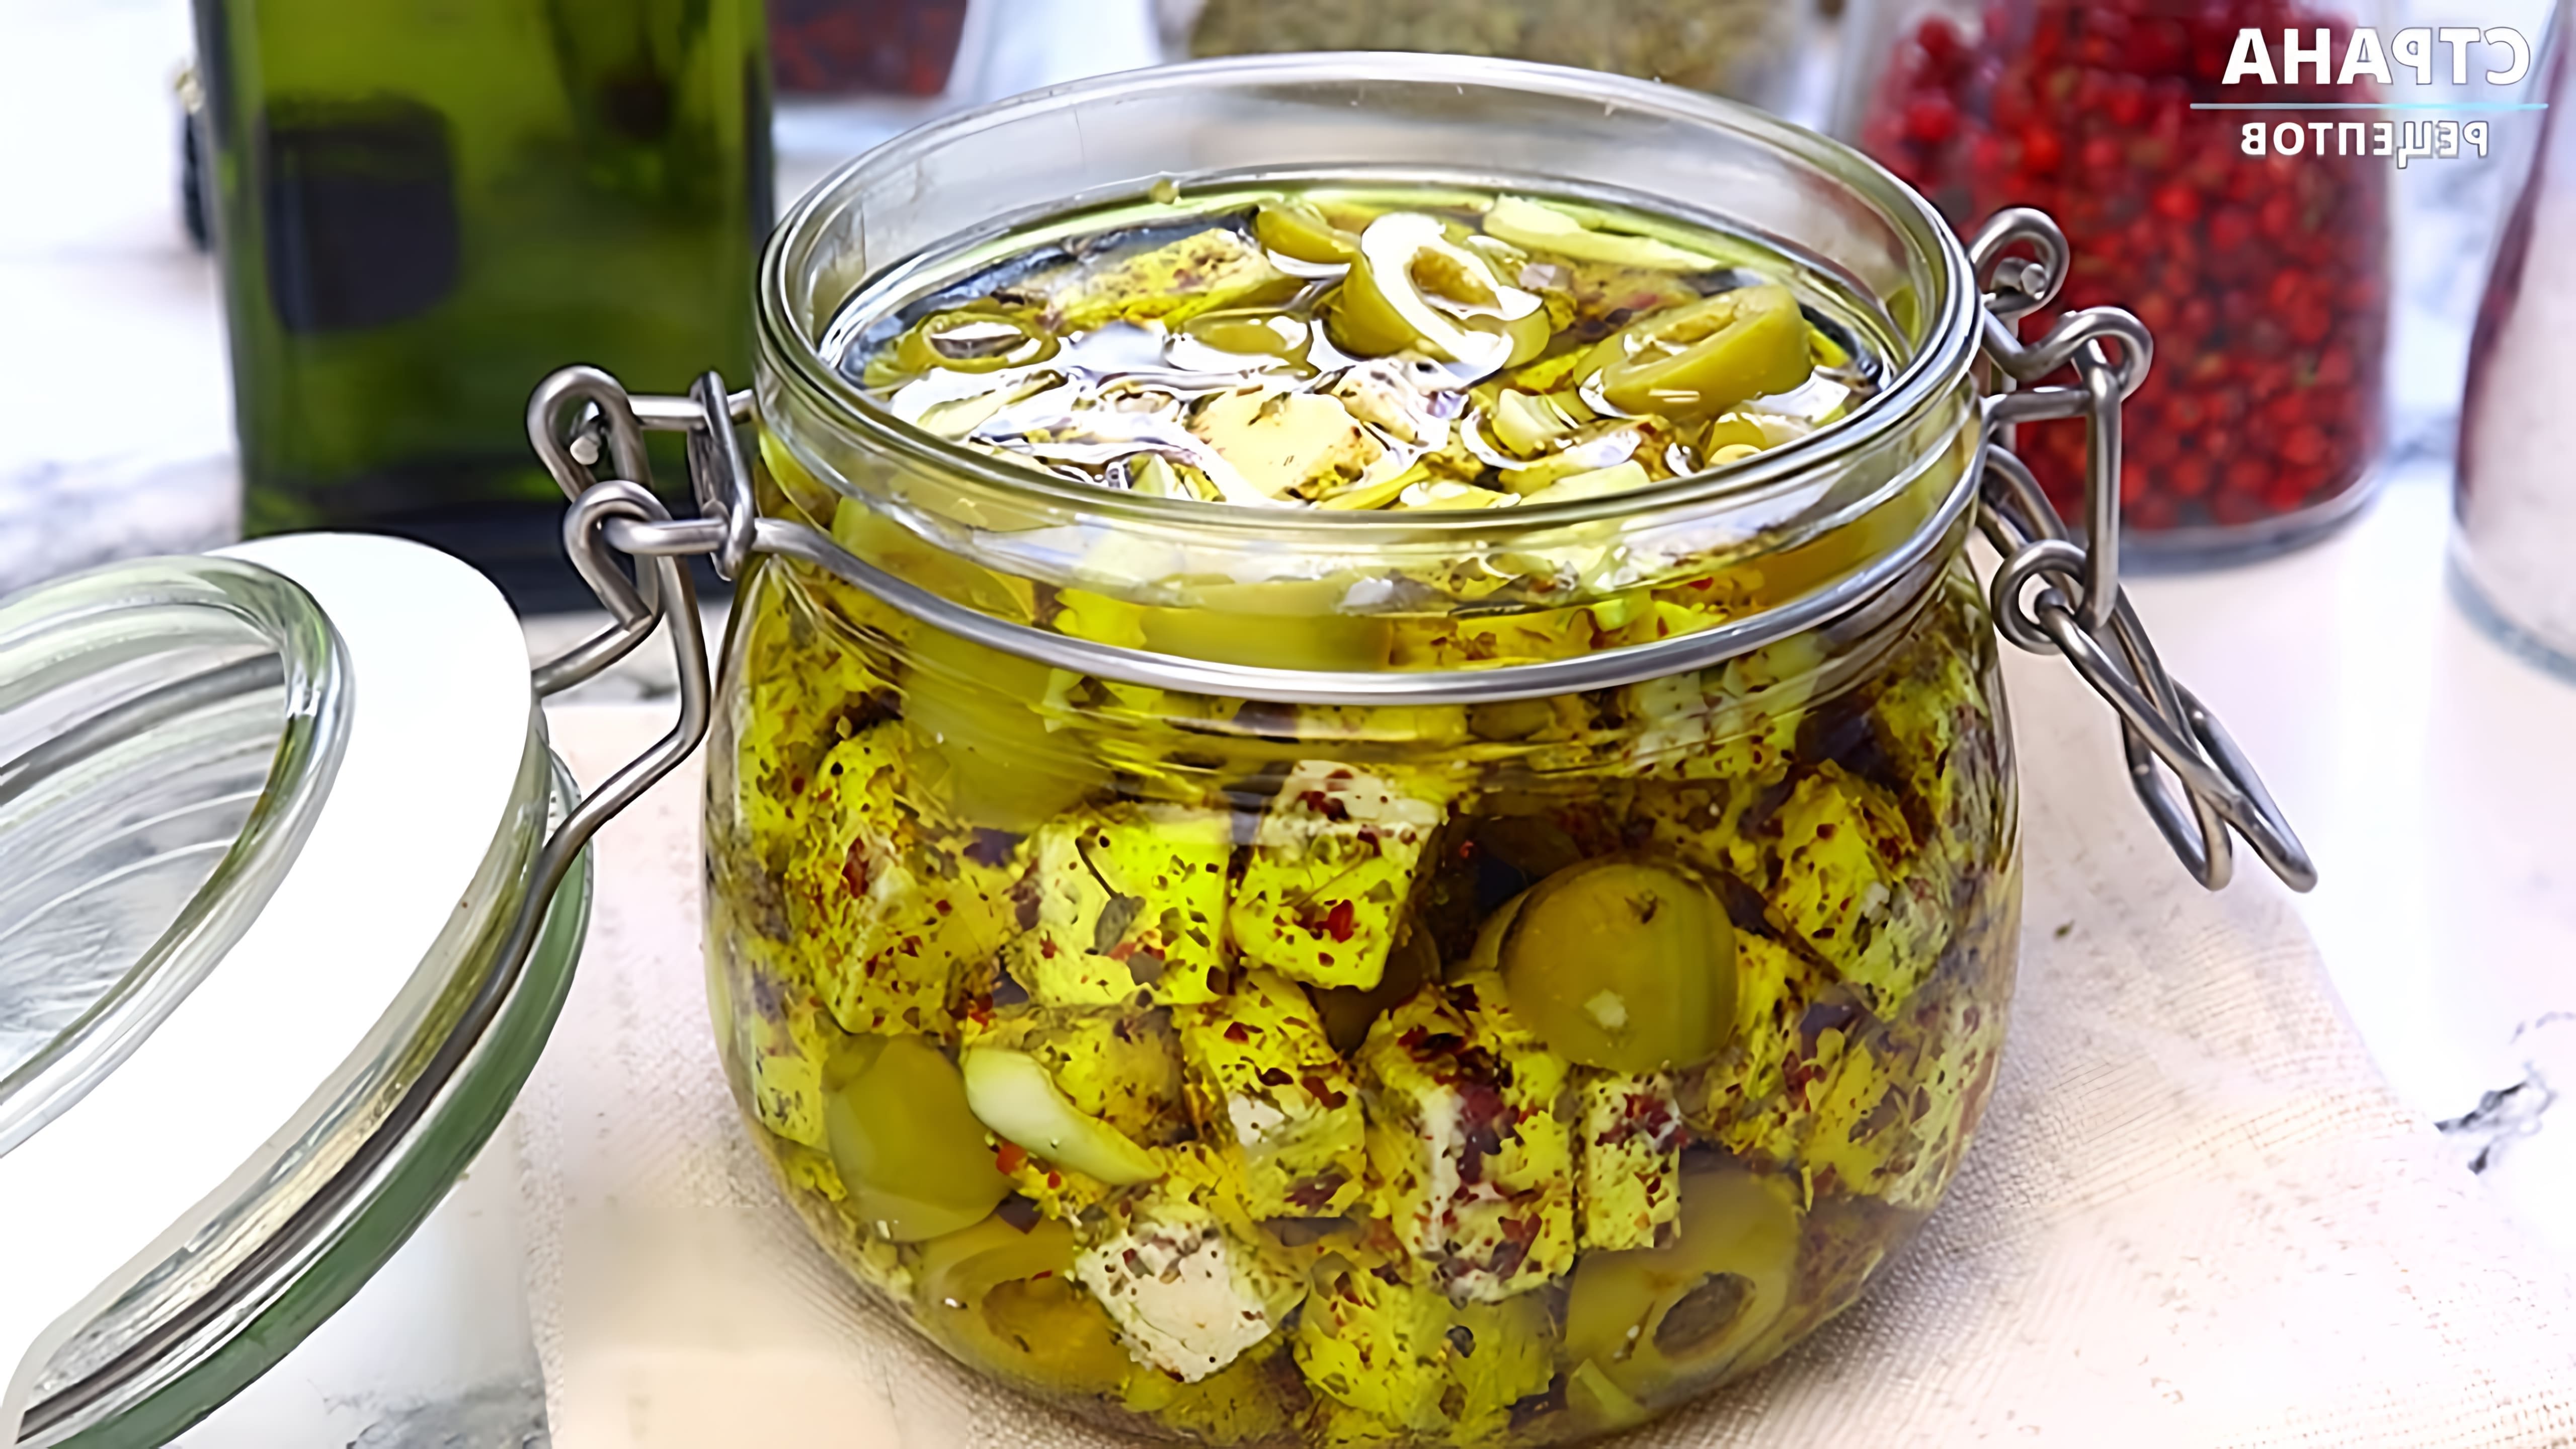 В этом видео демонстрируется процесс маринования адыгейского сыра с оливками